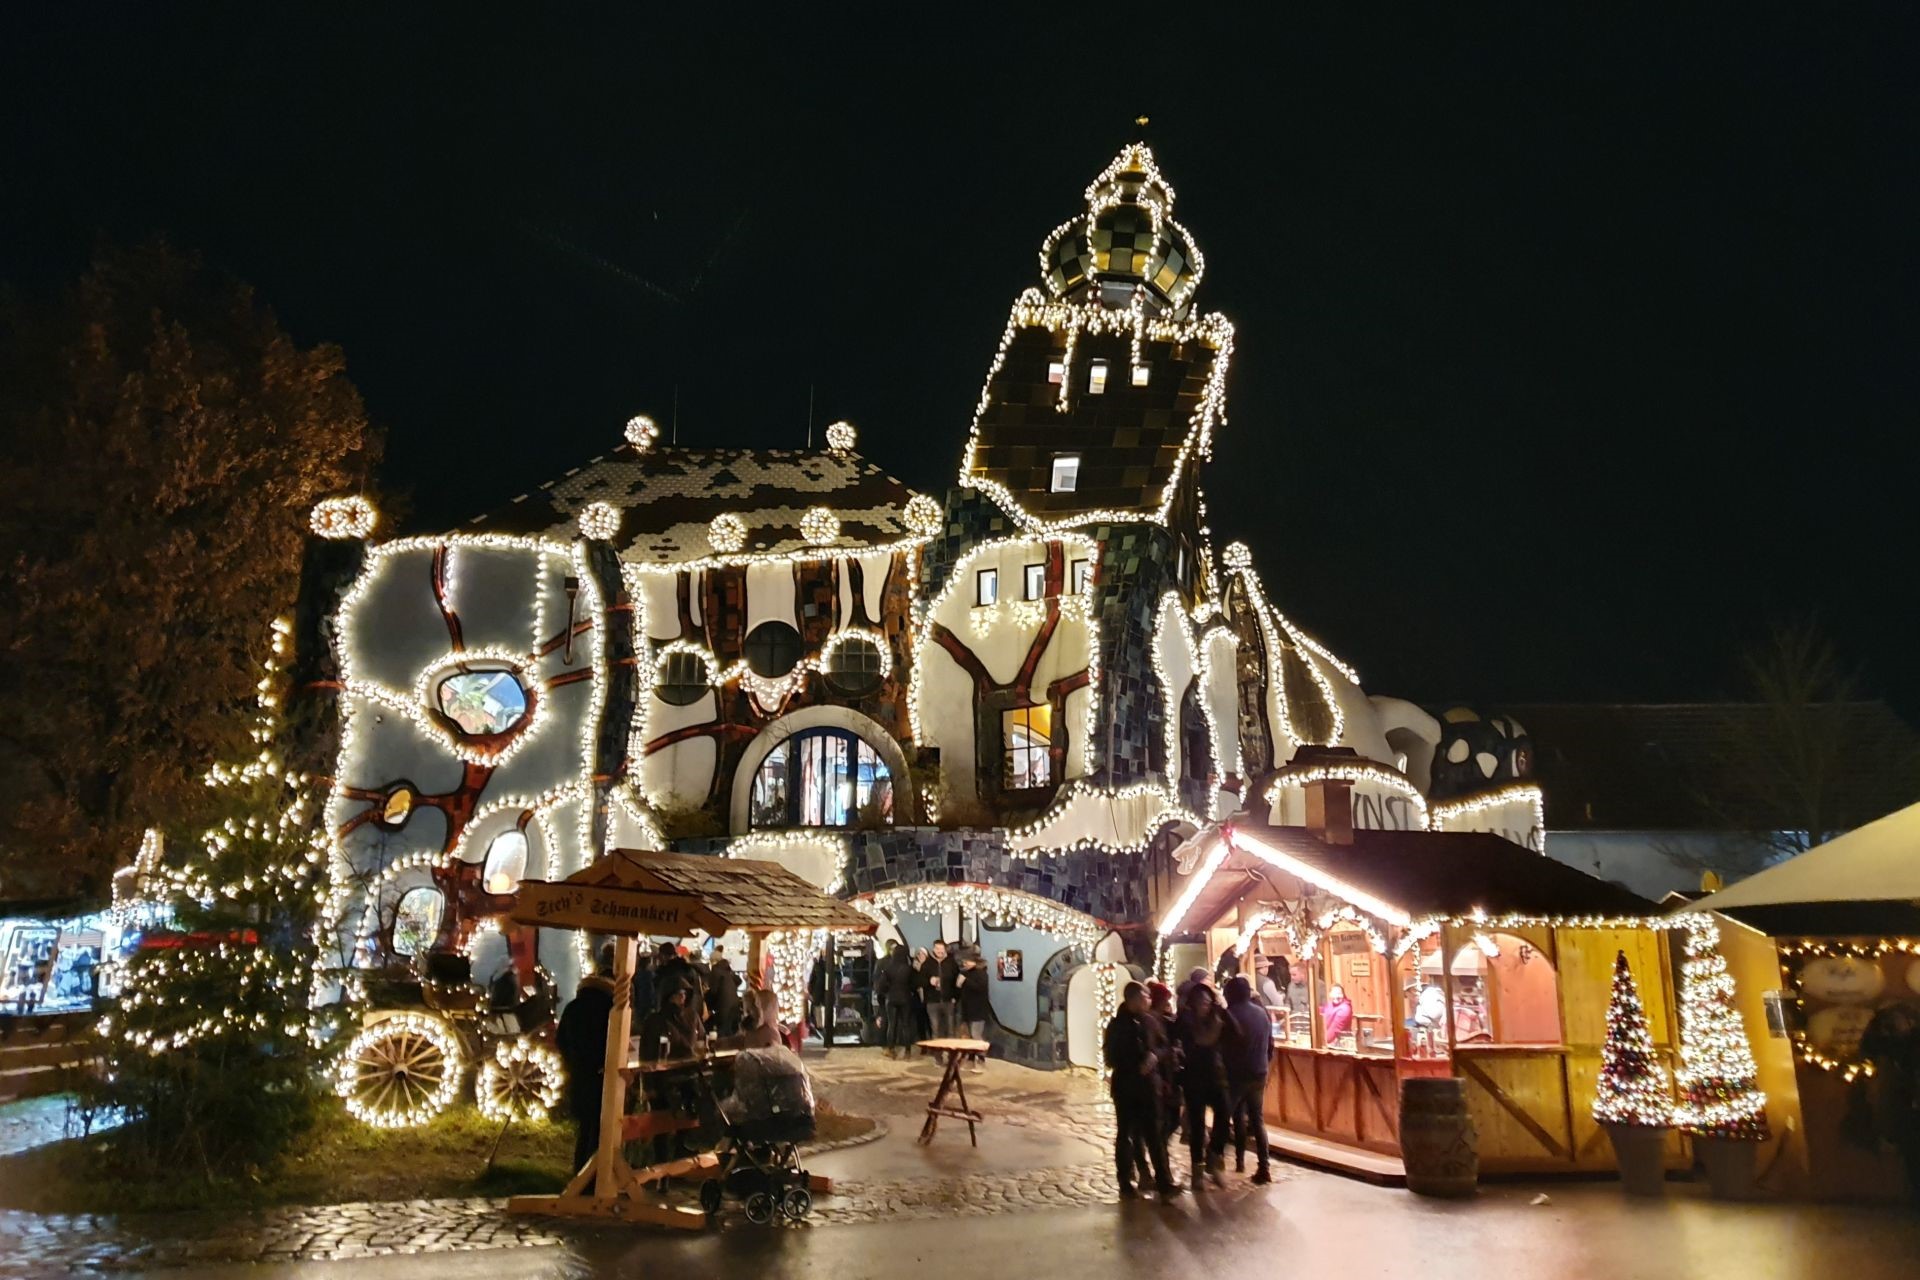 Das KunstHausAbensberg der Weissbierbrauerei Kuchlbauer ist bei Kuchlbauers Turmweihnacht hell erleuchtet durch Weihnachtsschmuck. Zahlreiche Buden um das Museum herum laden ein zum Stöbern und Schmankerl probieren.